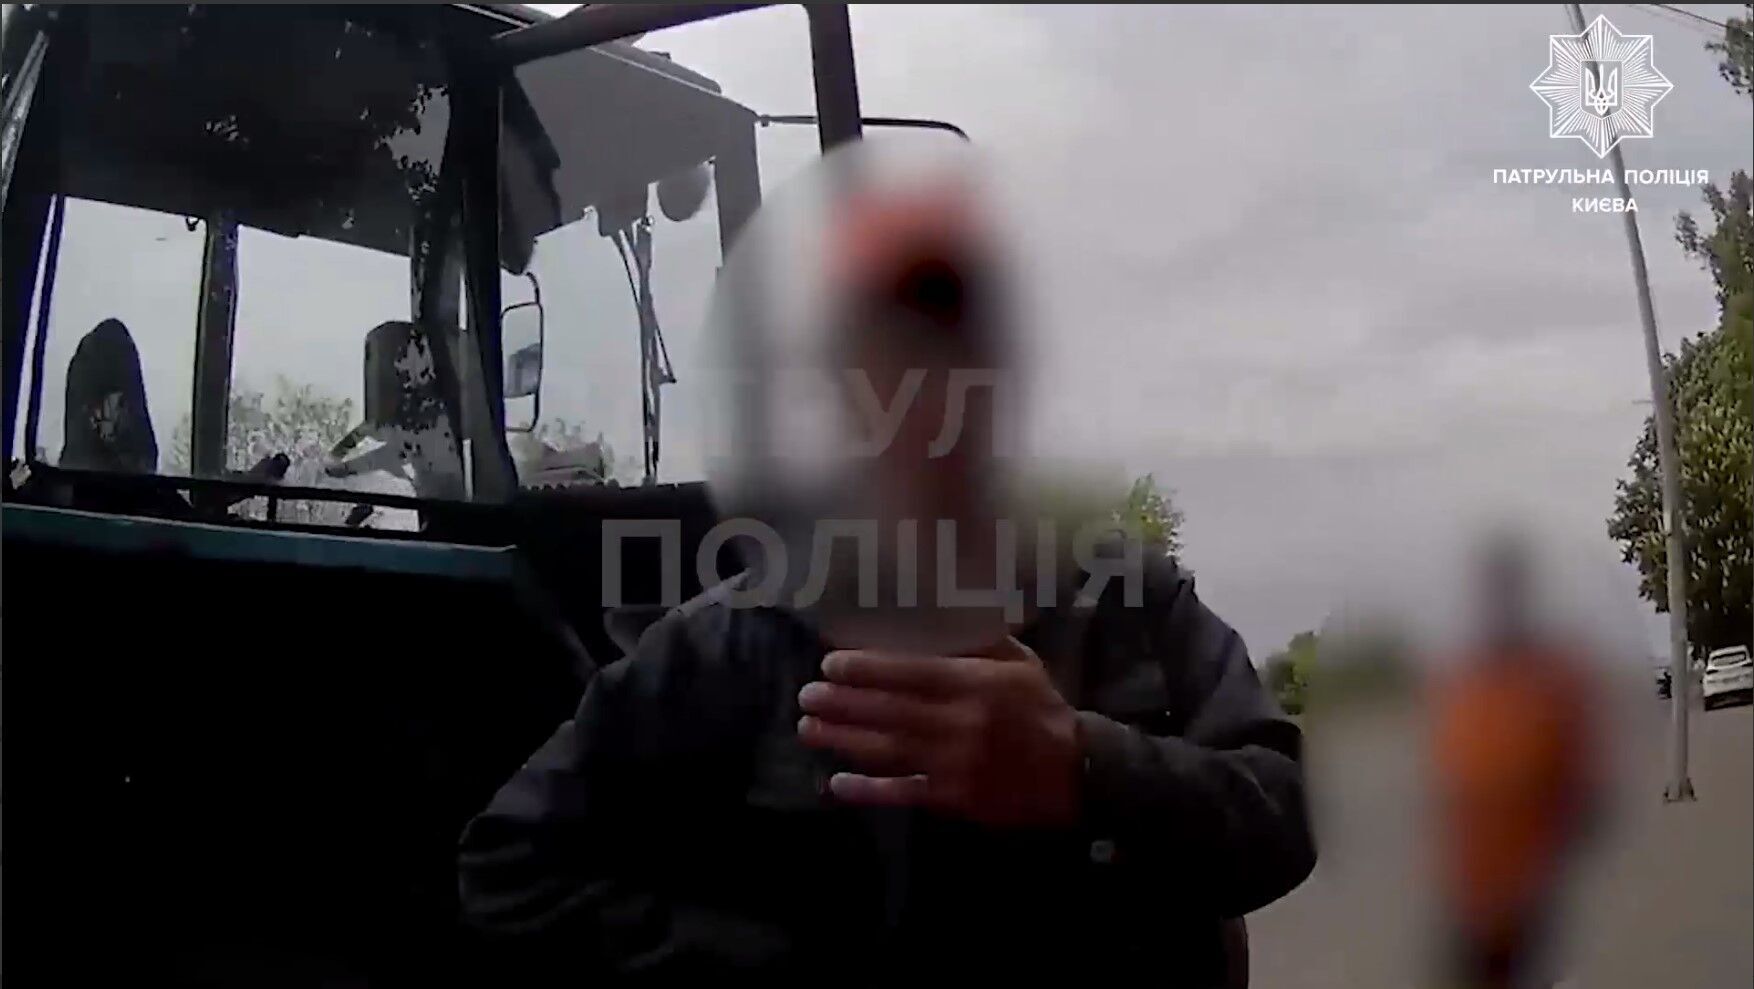 Так это капуста кислая: в Киеве тракторист оригинально объяснил, почему у него были признаки опьянения. Видео